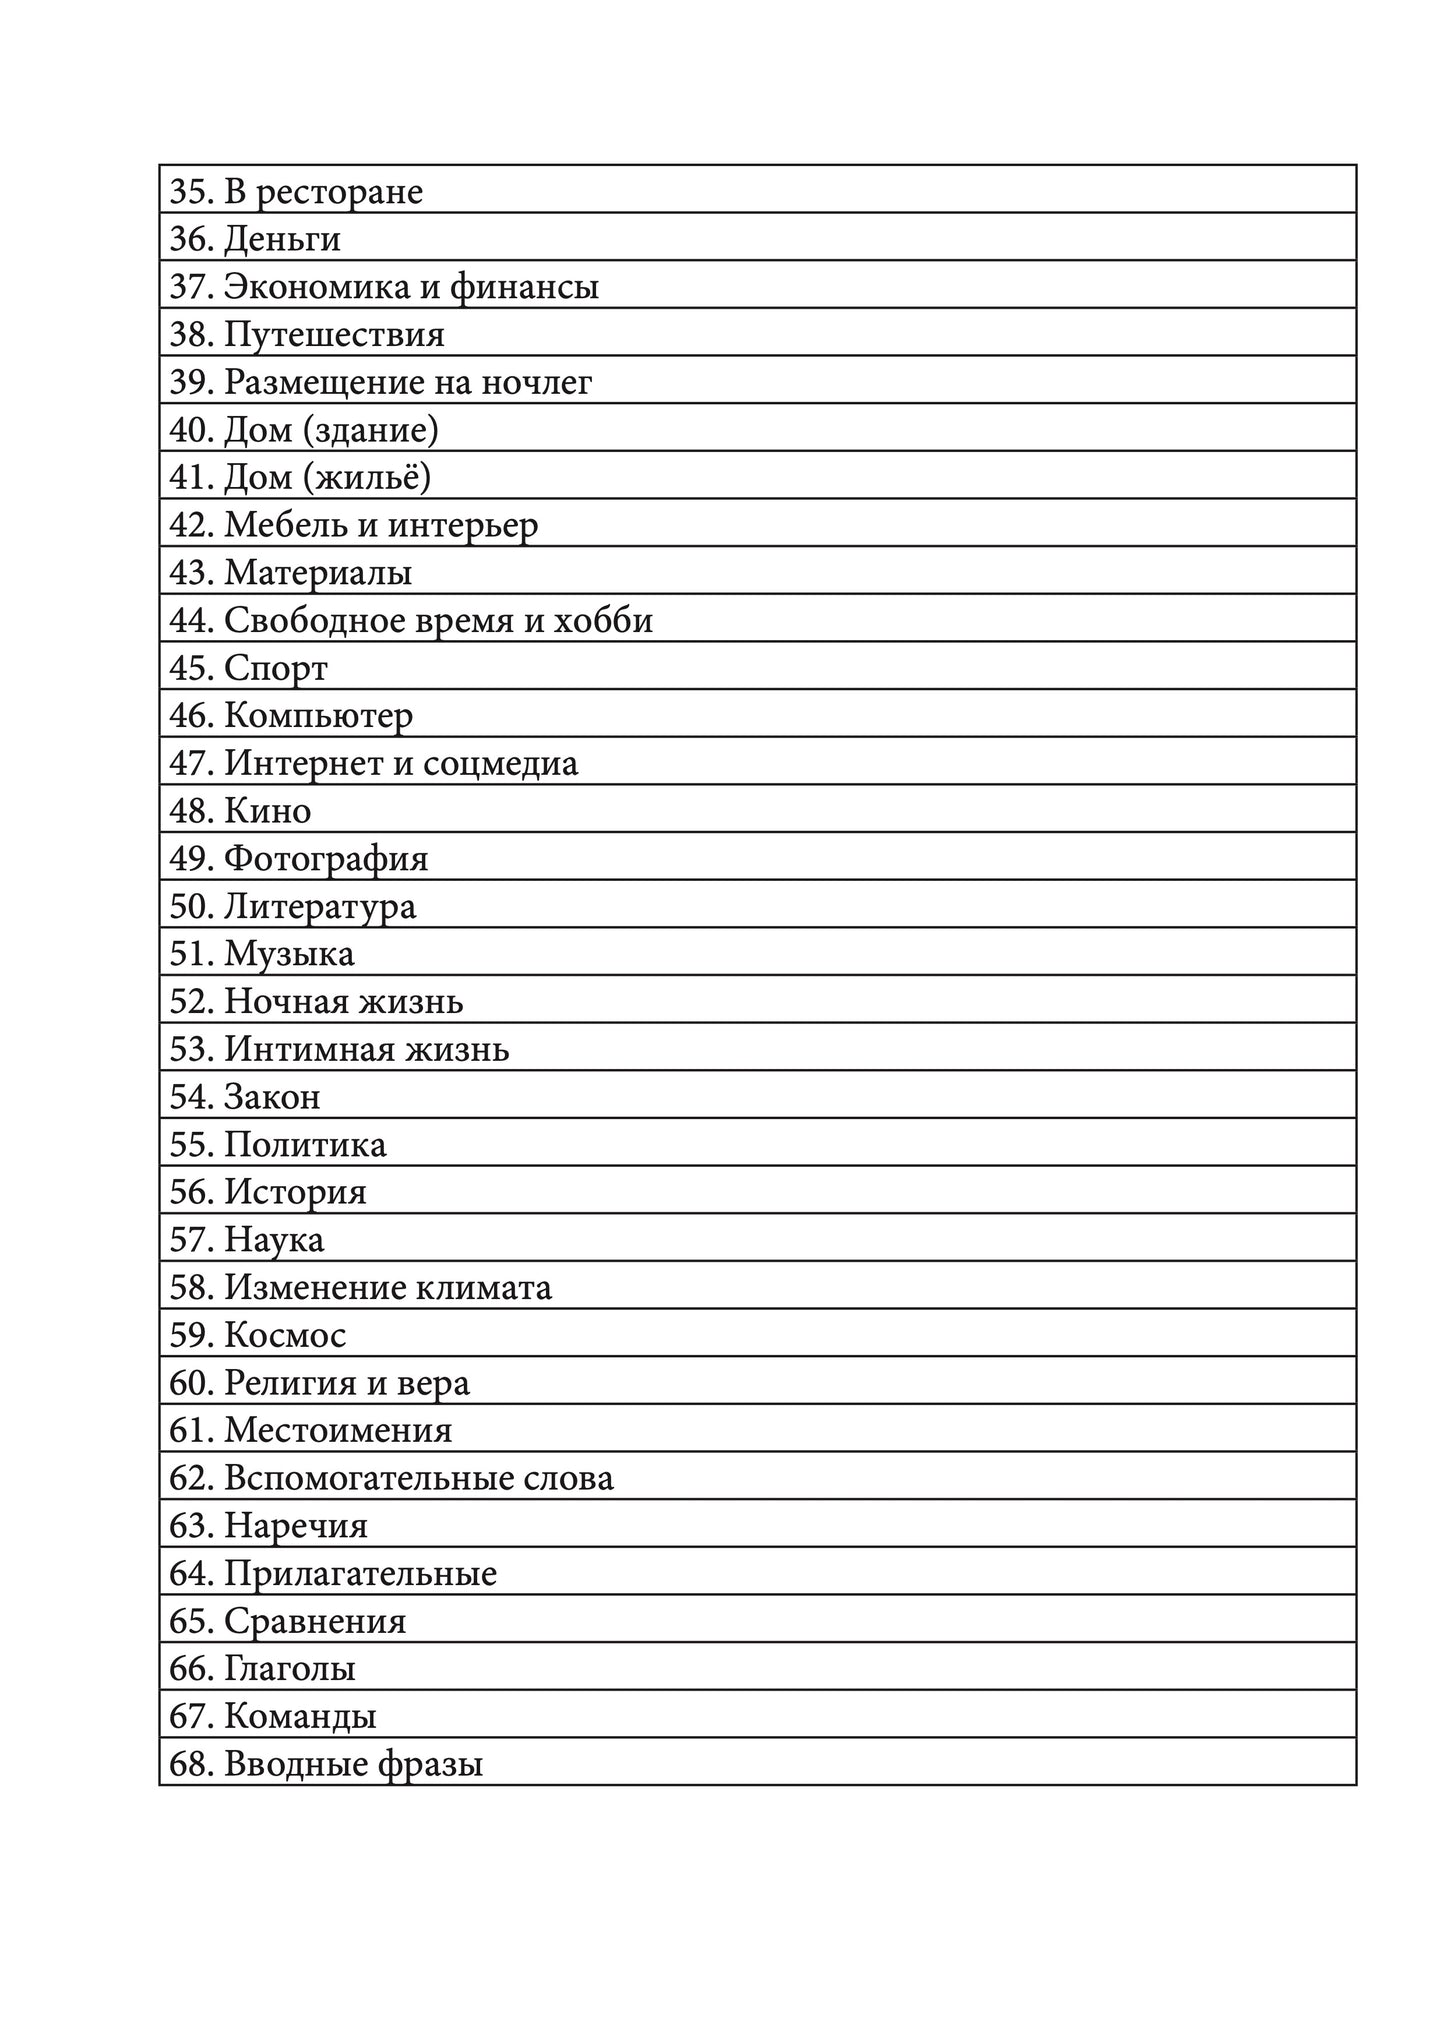 Ненецкий Лесной язык: тетрадь-словарь